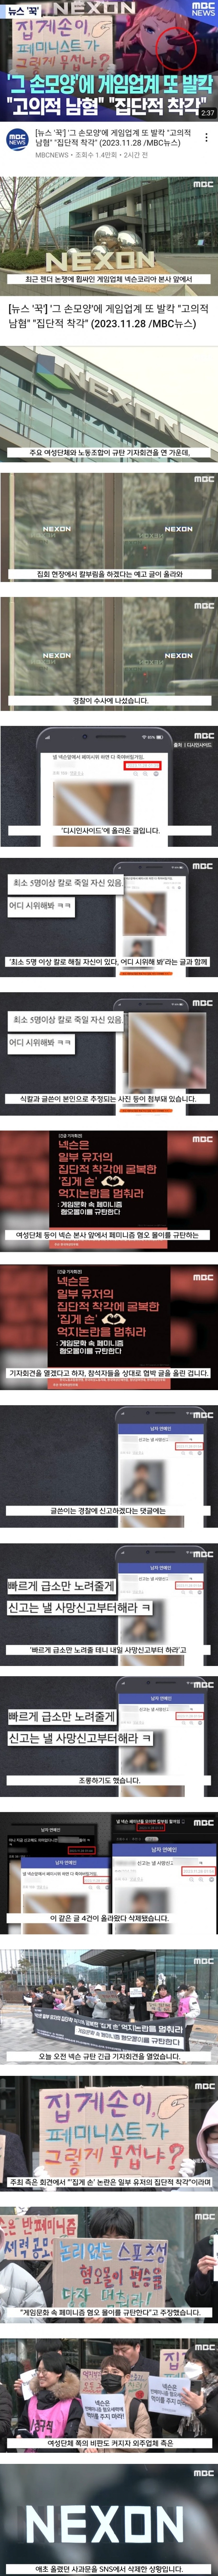 남혐 게임 사건에 대한 MBC의 보도 - 13